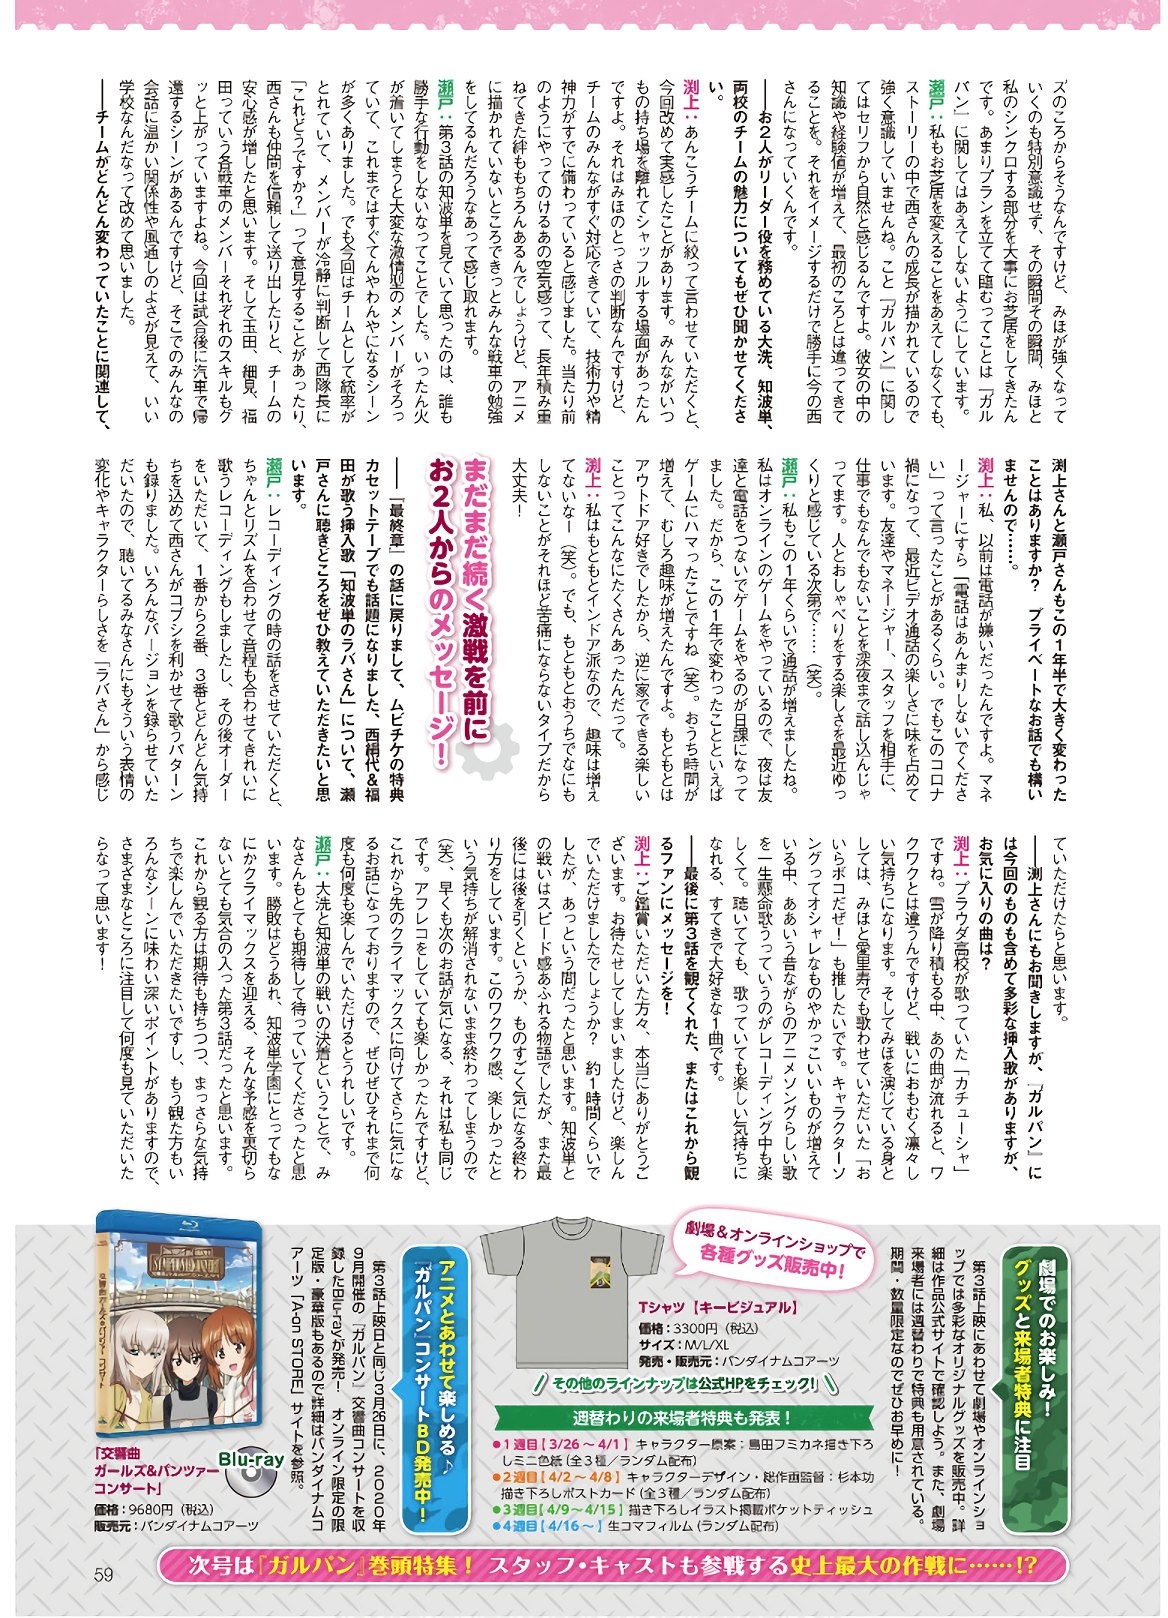 Dengeki G's Magazine #286 - May 2021 56